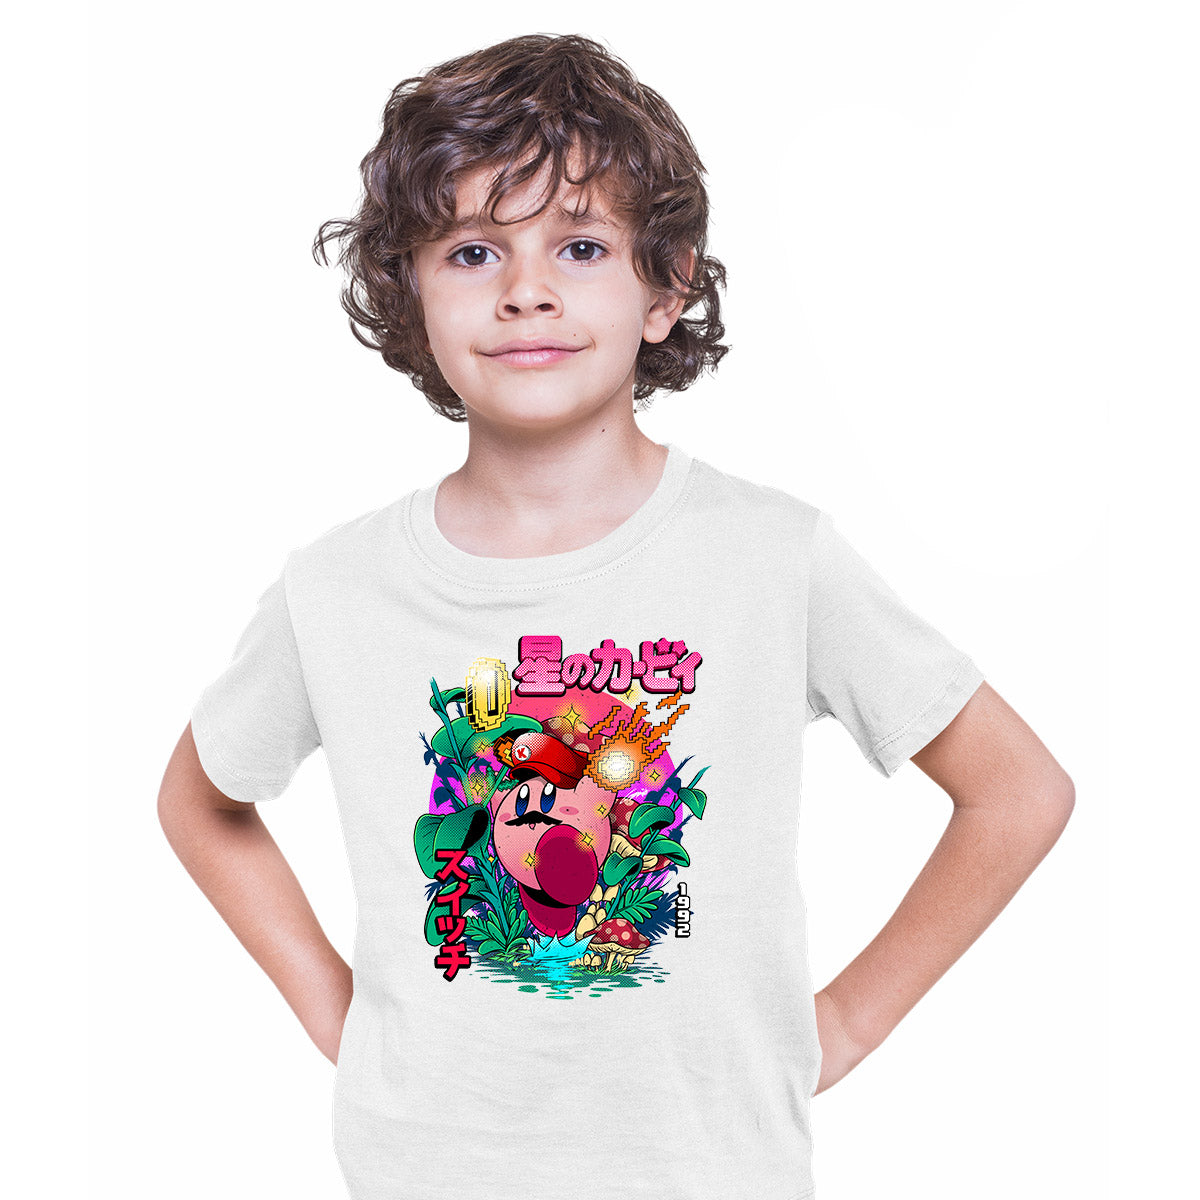 Kirby's Dream Land Kids White T-shirt